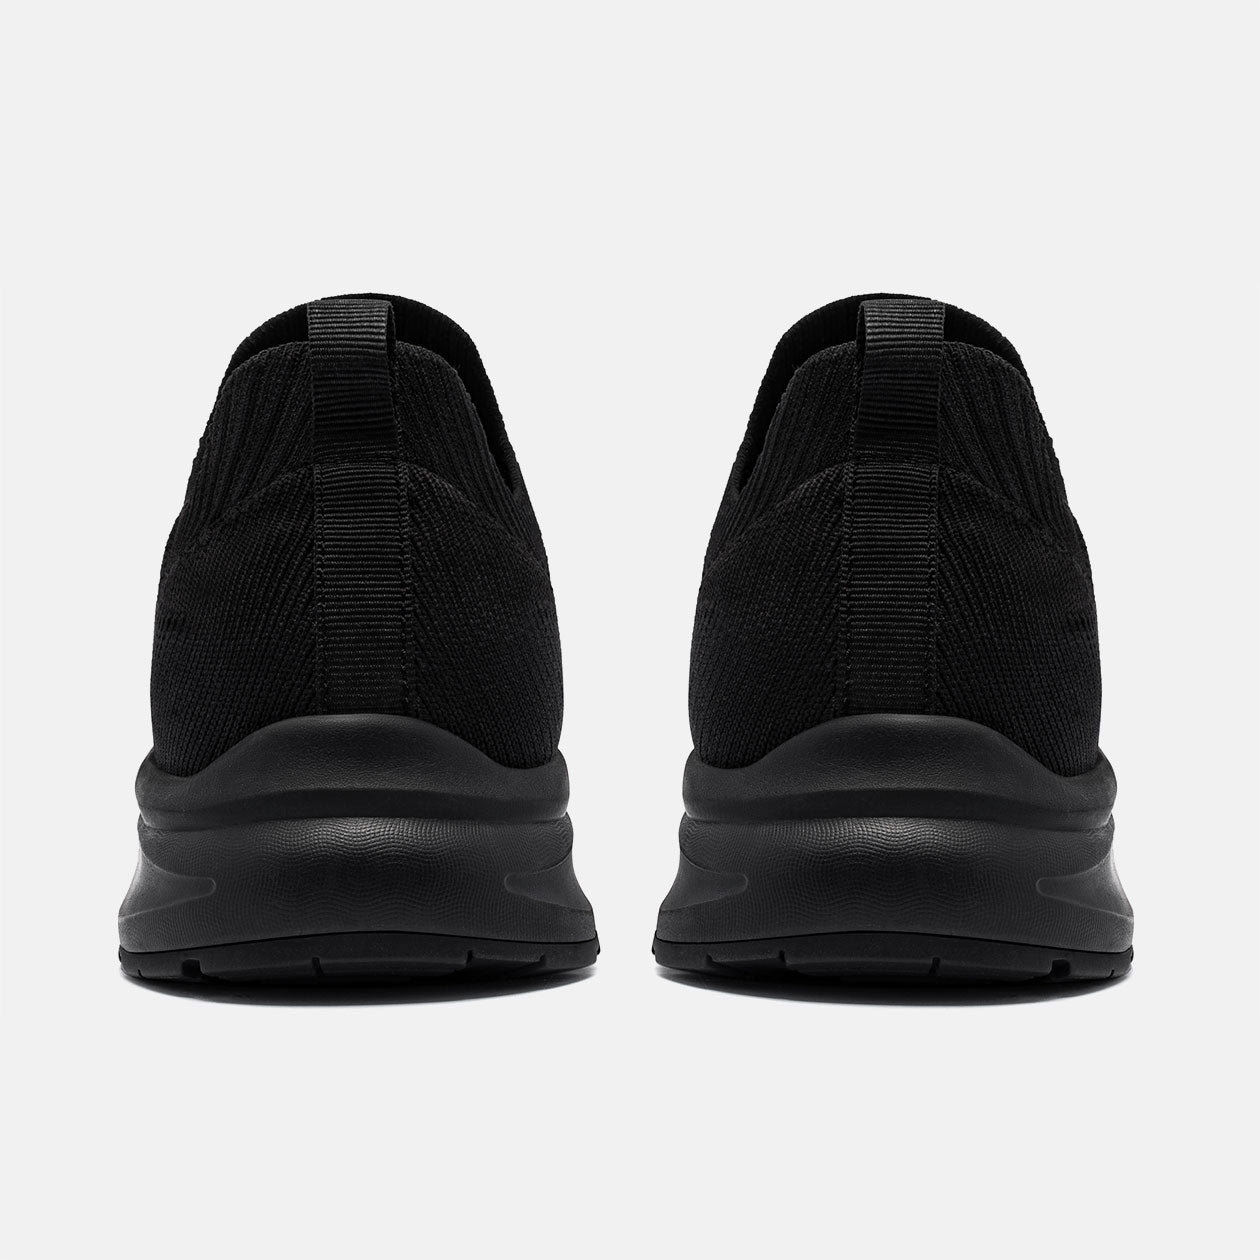 LARNMERN Non Slip Slip On Easy Clean Work Shoes For Men,#21114